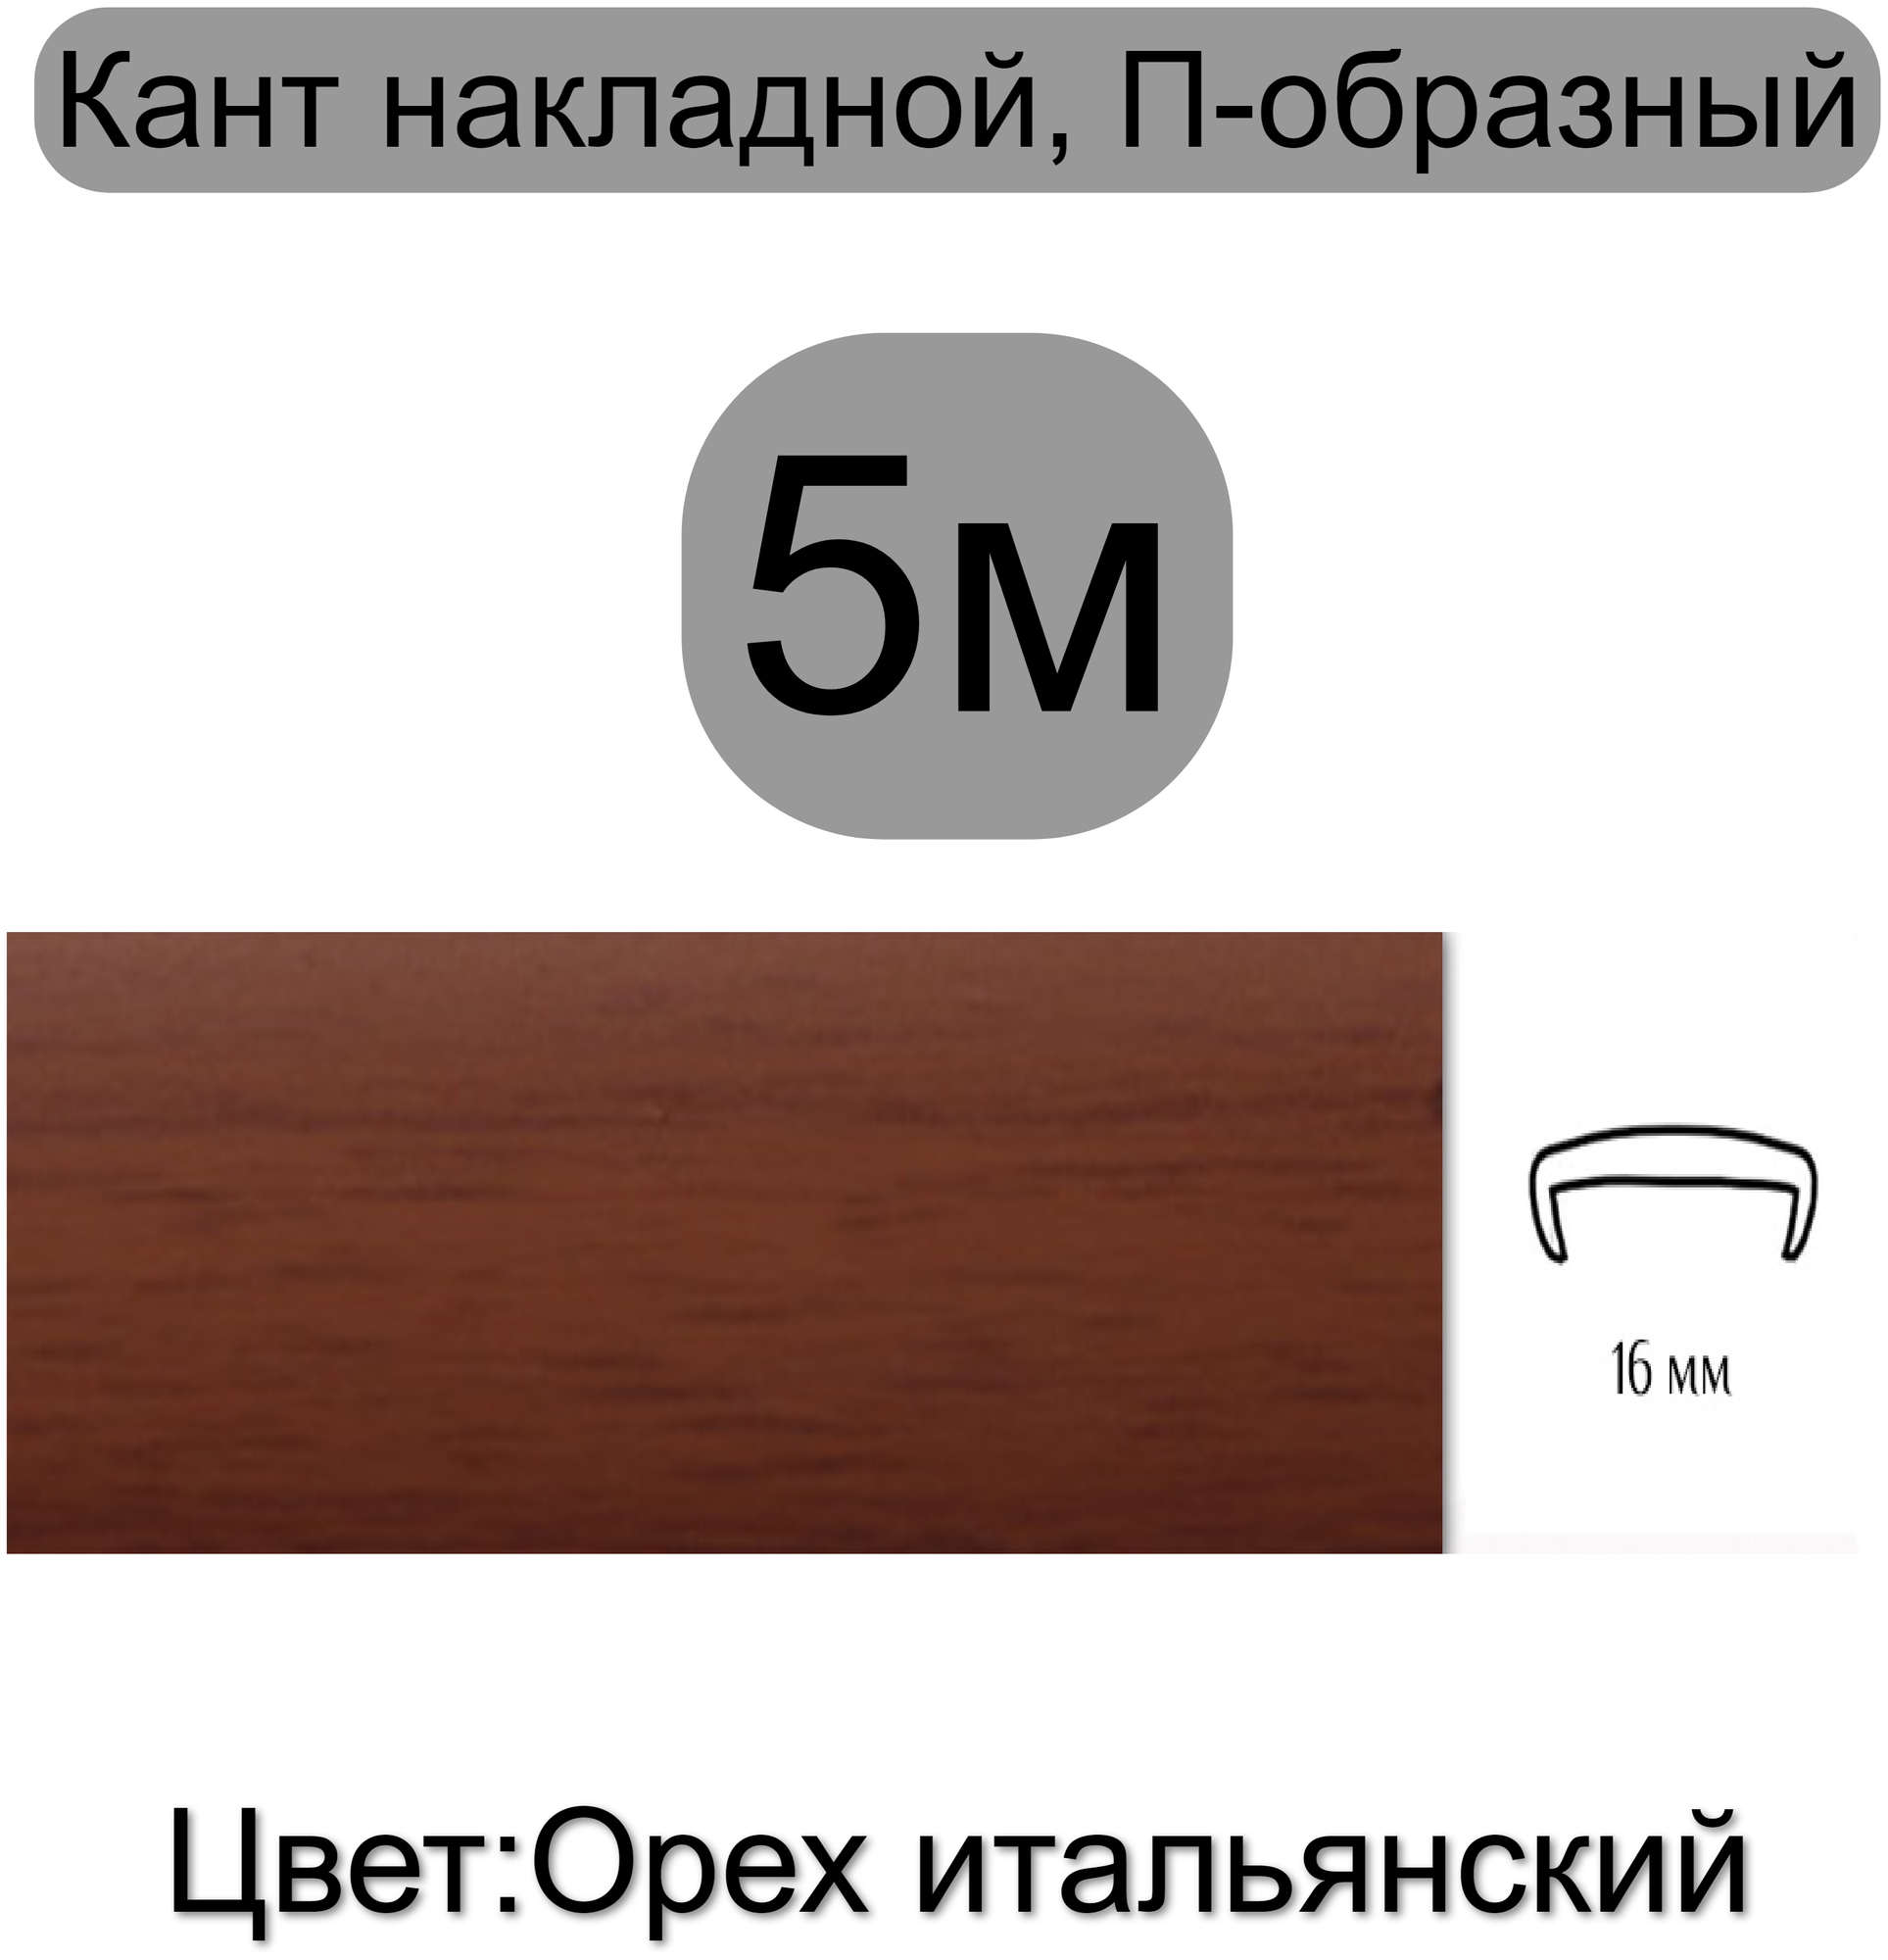 Кромка мебельная, профиль ПВХ кант, накладной, 16мм, цвет: орех итальянский, 5м